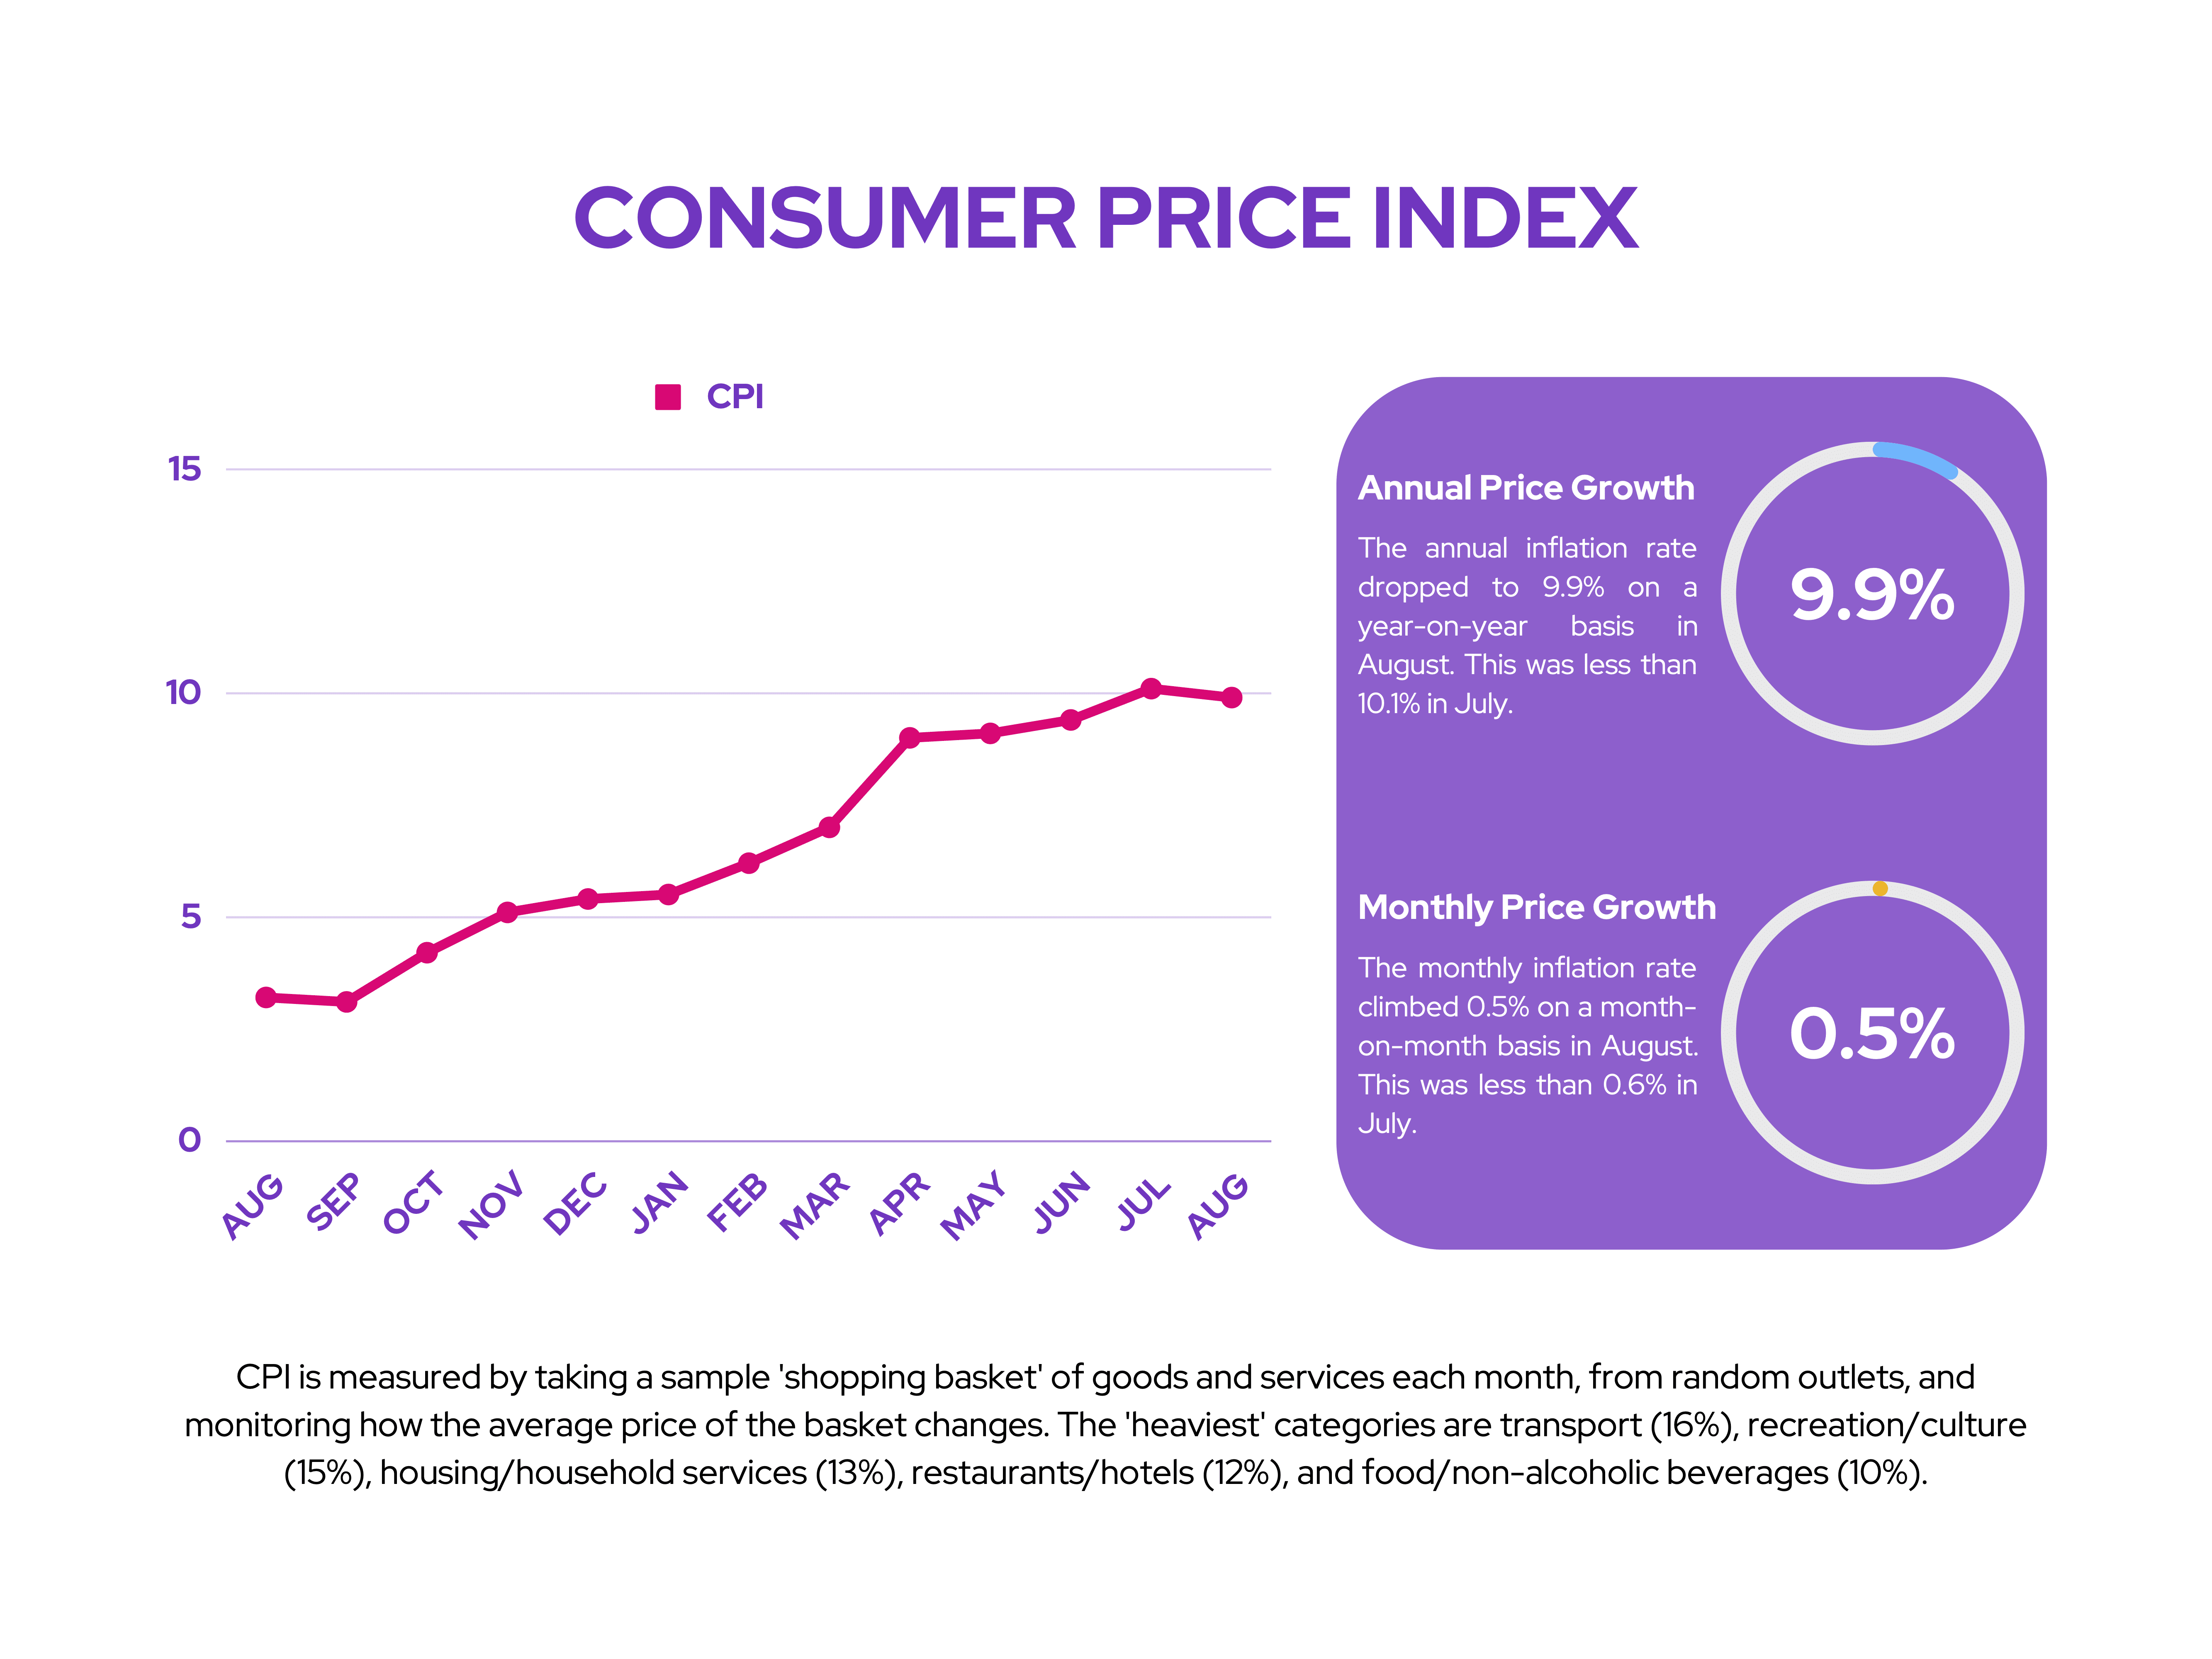 IAG: Consumer Price Index